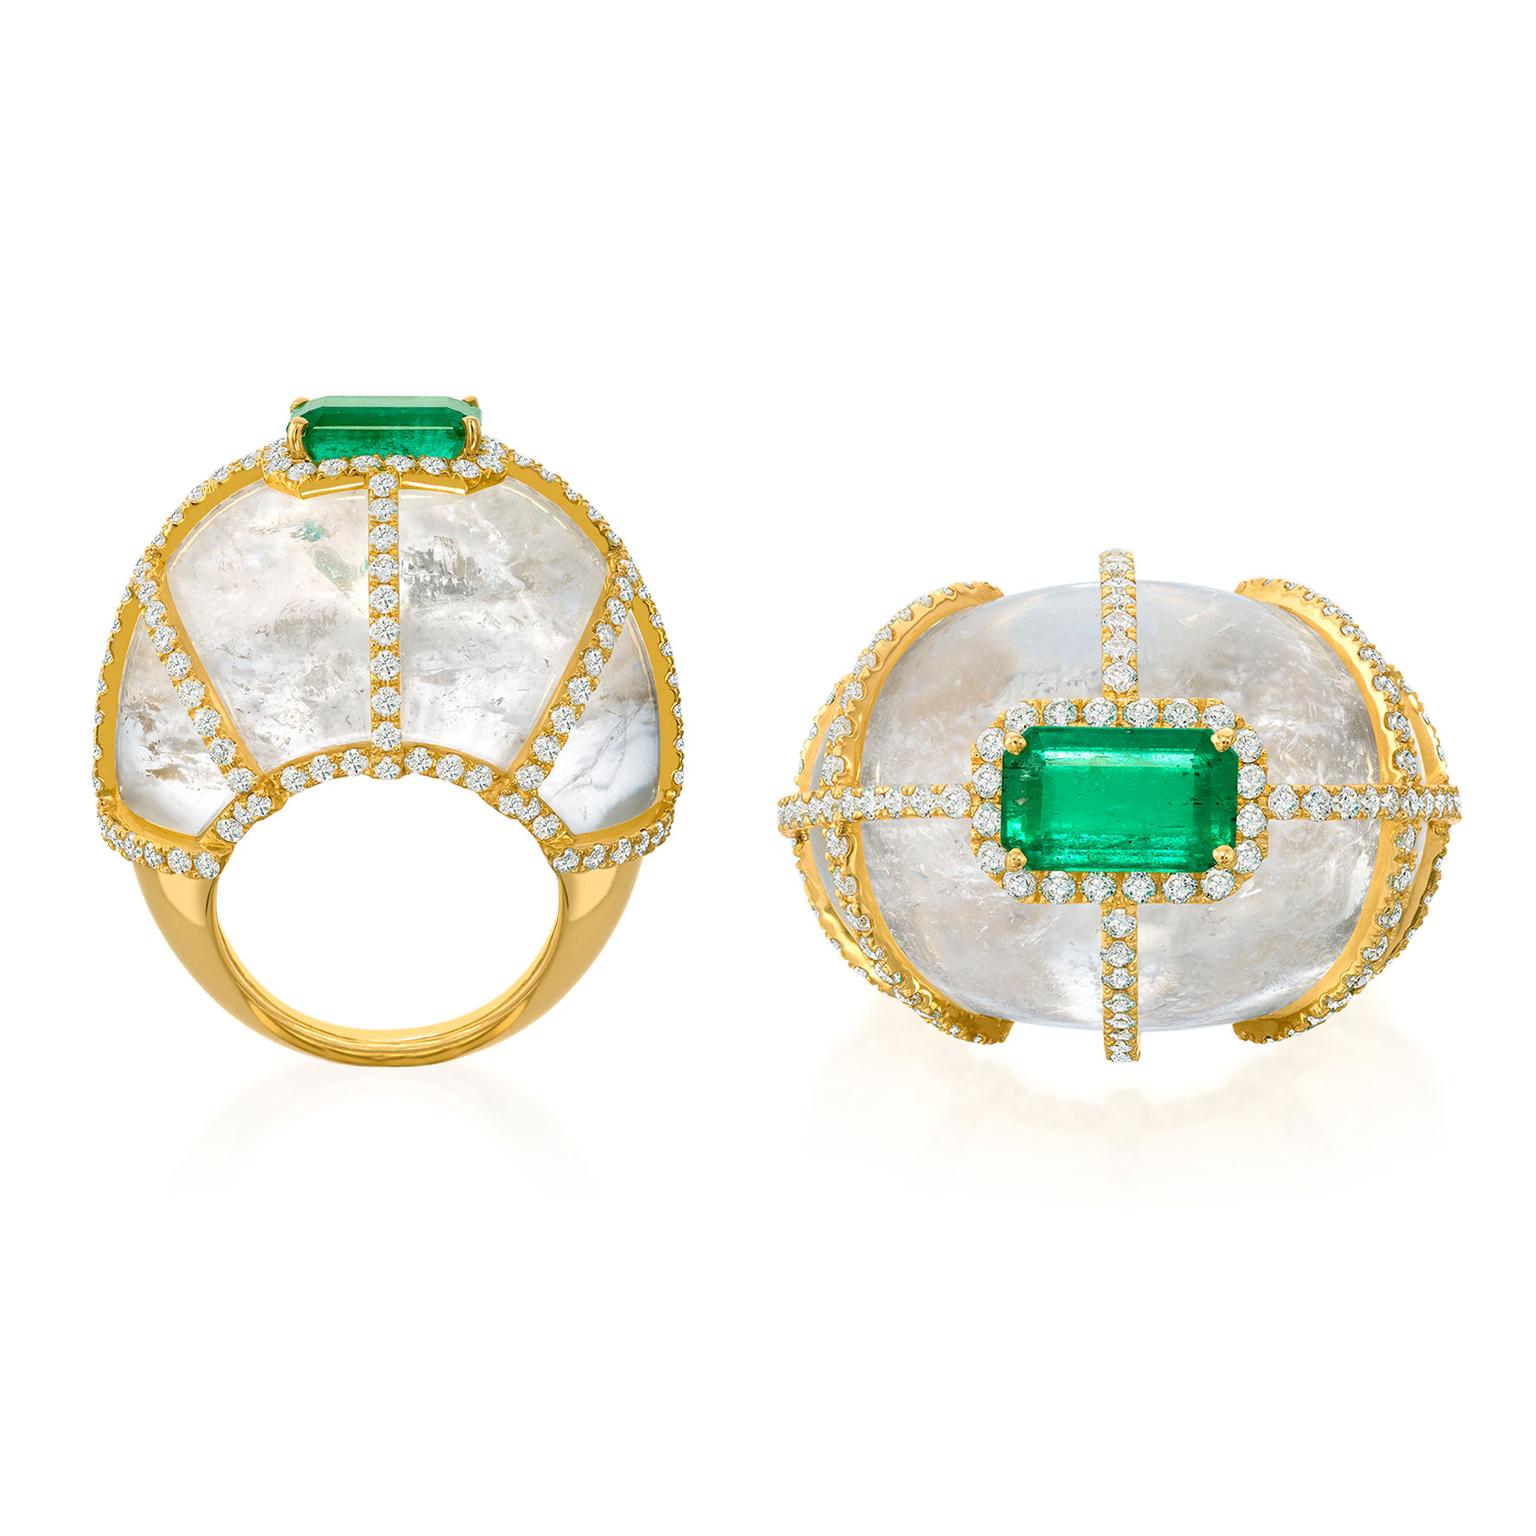 Amsterdam Sauer Illusion emerald ring with white quartz and diamonds